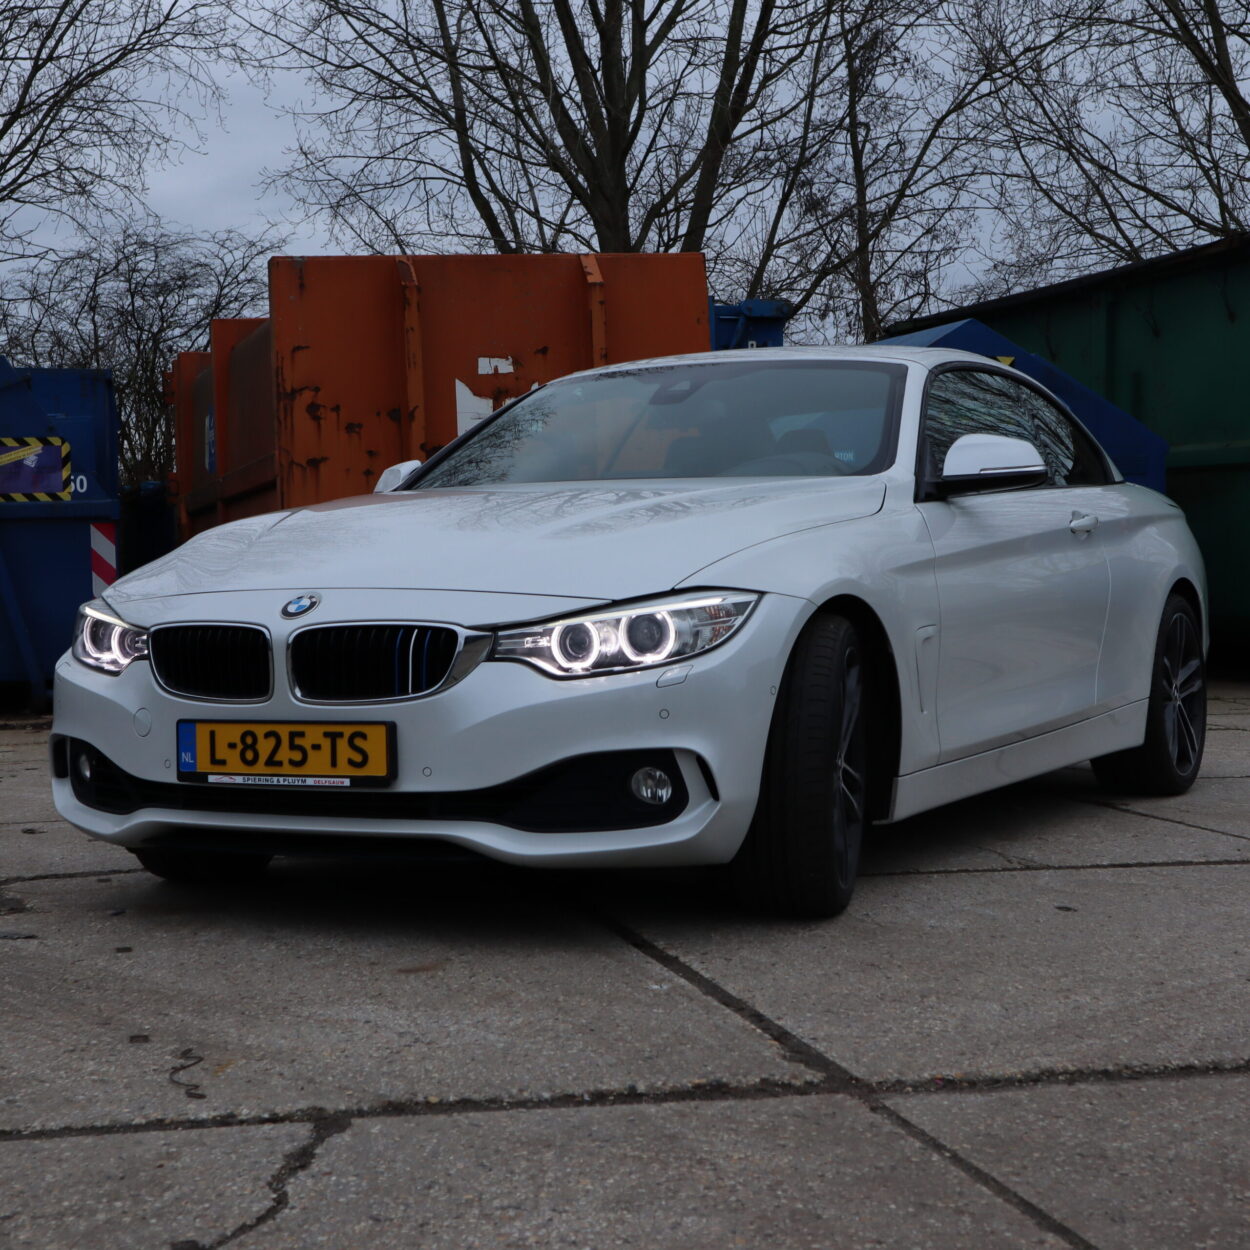 BMW Spiering en Pluym, Rotterdam, Delft